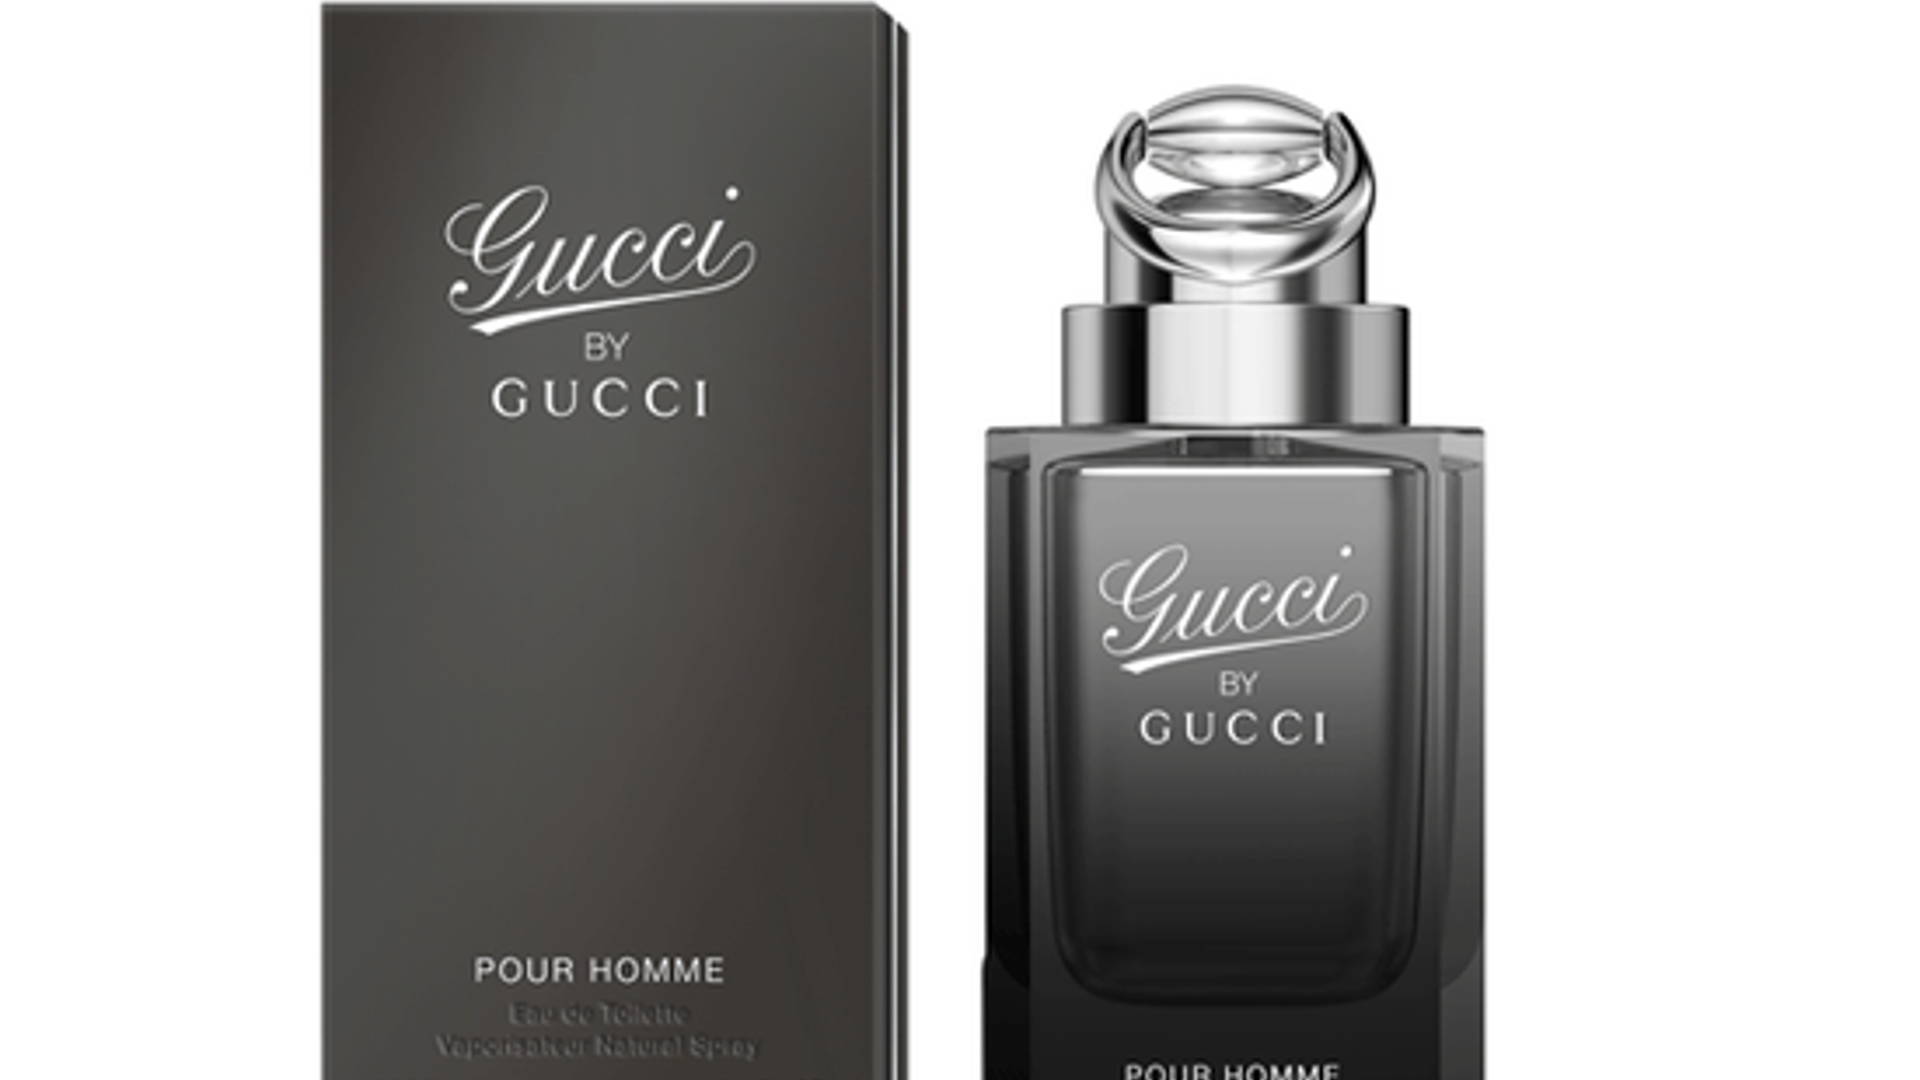 Gucci homme купить. Gucci by Gucci pour homme EDT, 90 ml. Gucci "Gucci pour homme" 100 ml. Gucci by Gucci pour homme. Туалетная вода мужская 90 мл Gucci by Gucci.